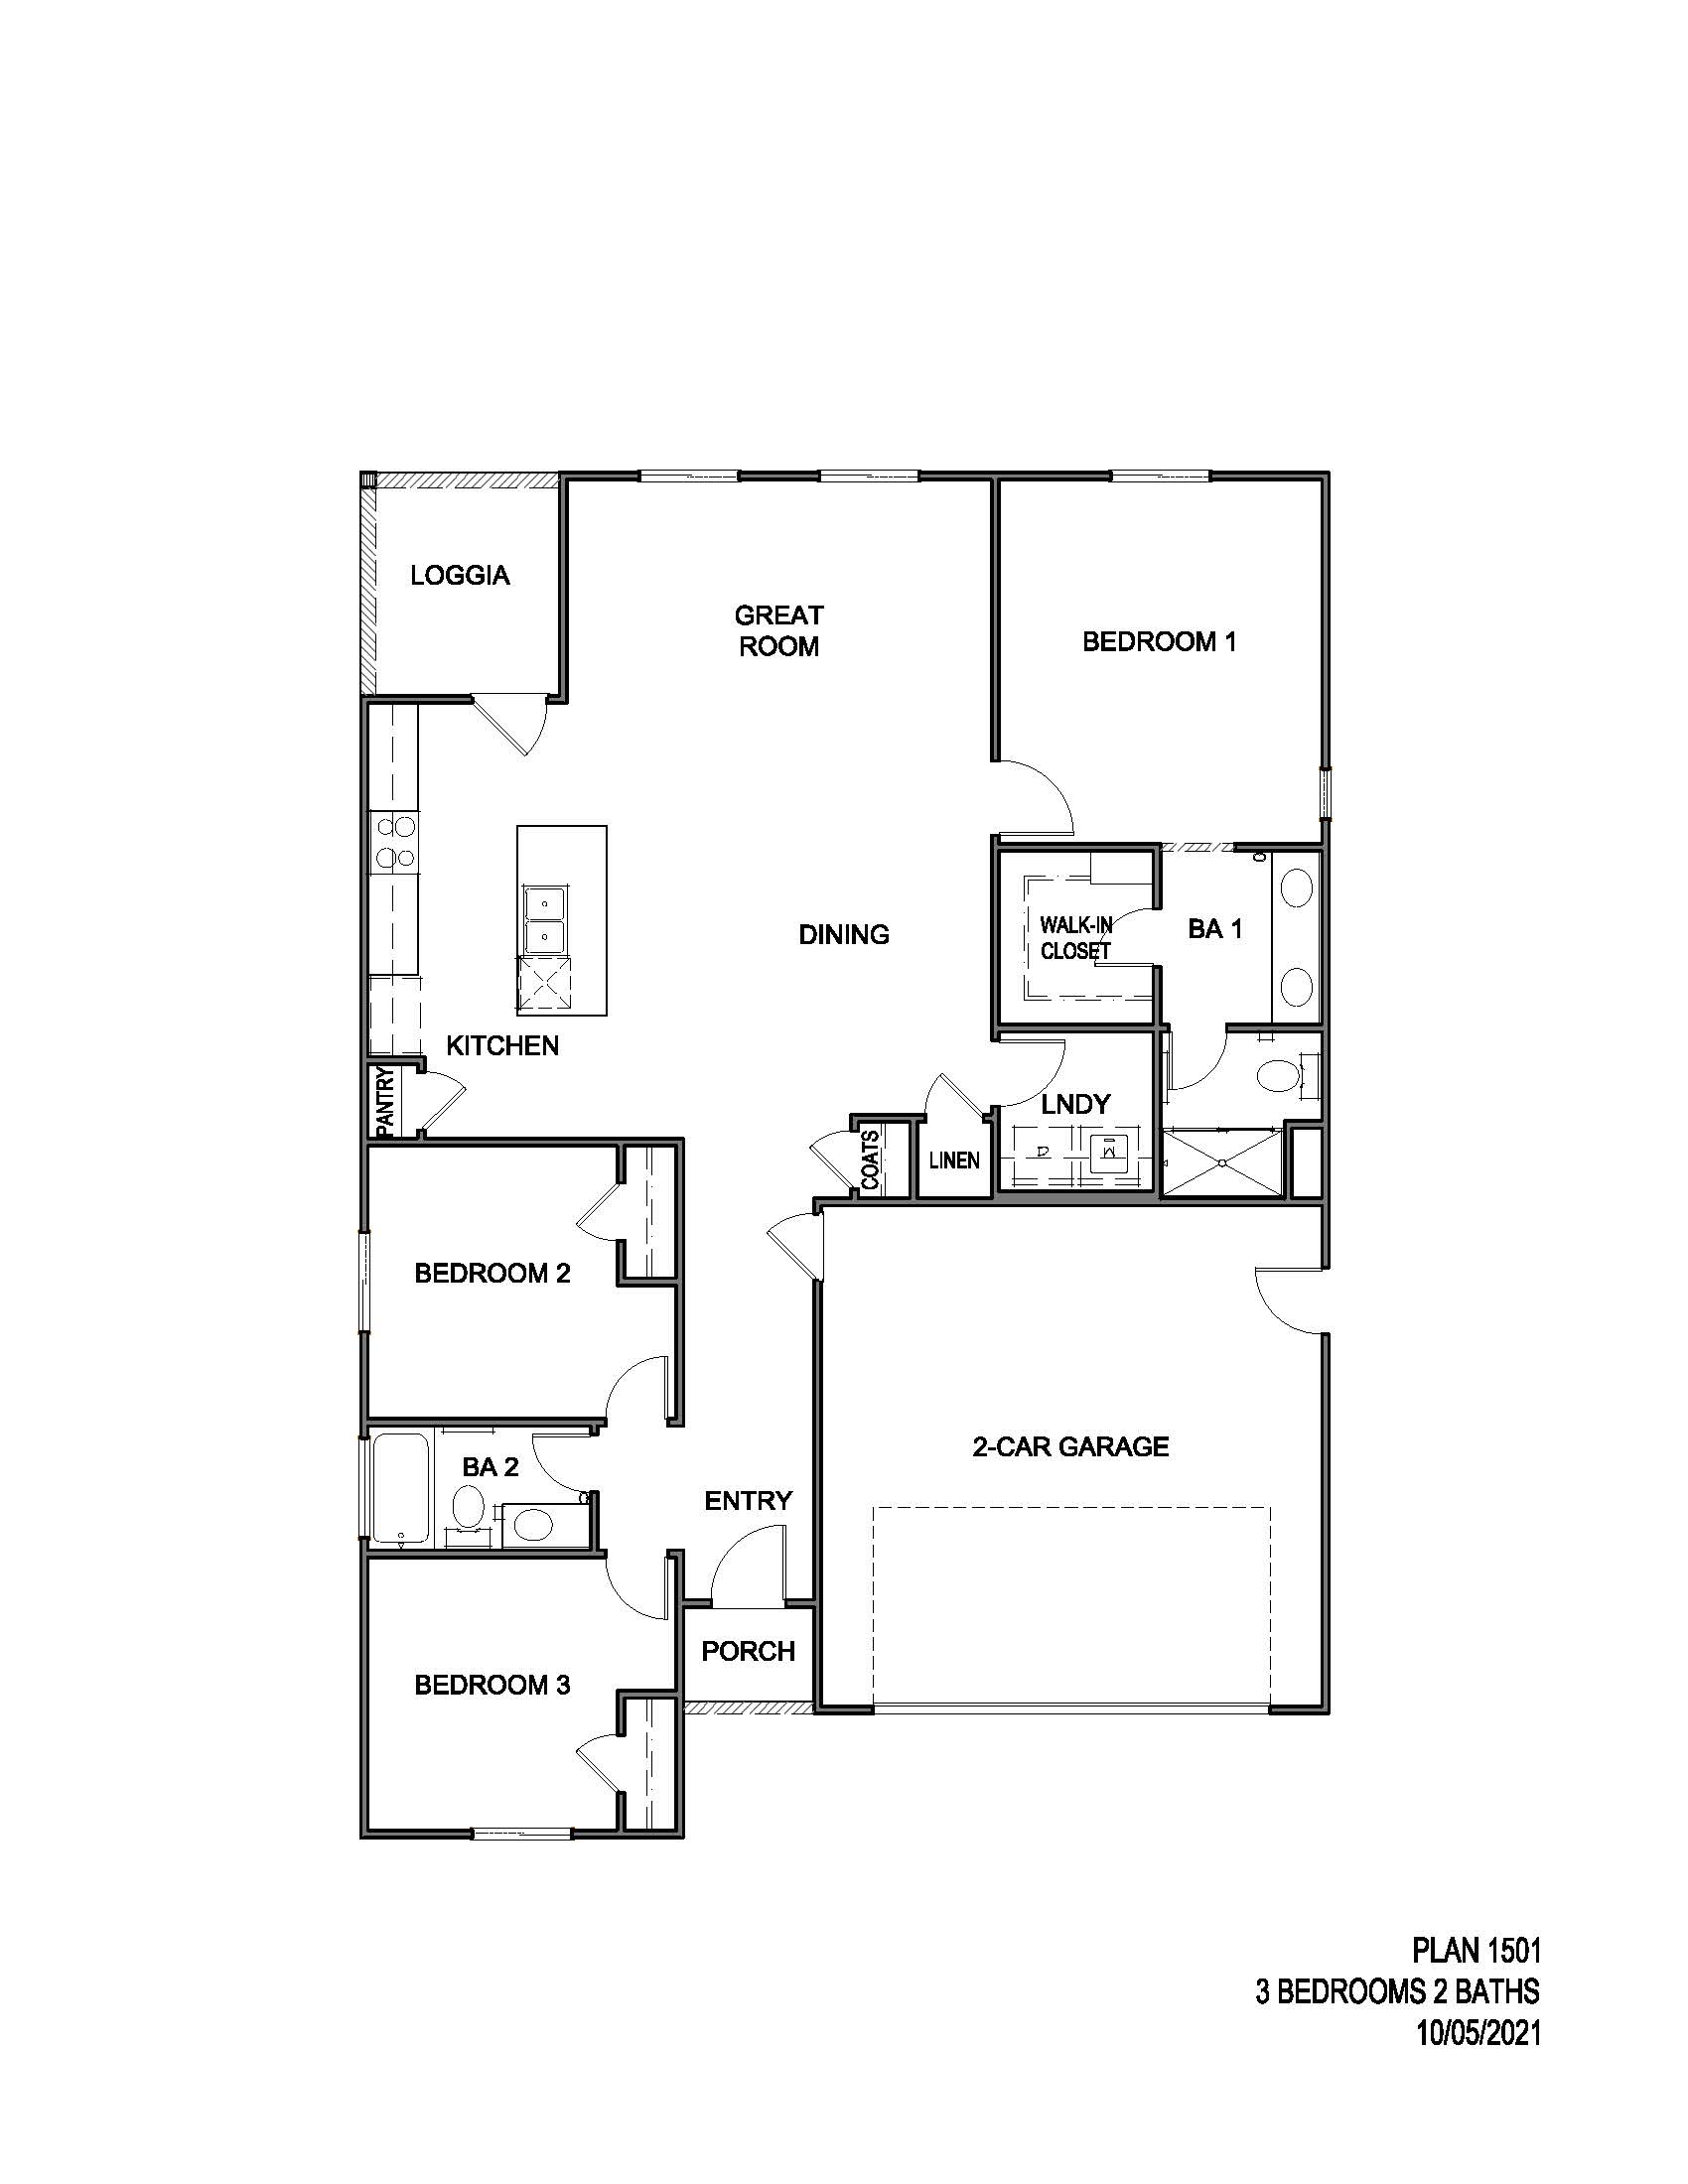 Single story floorplan 1501 3 bedrooms 2 bathrooms